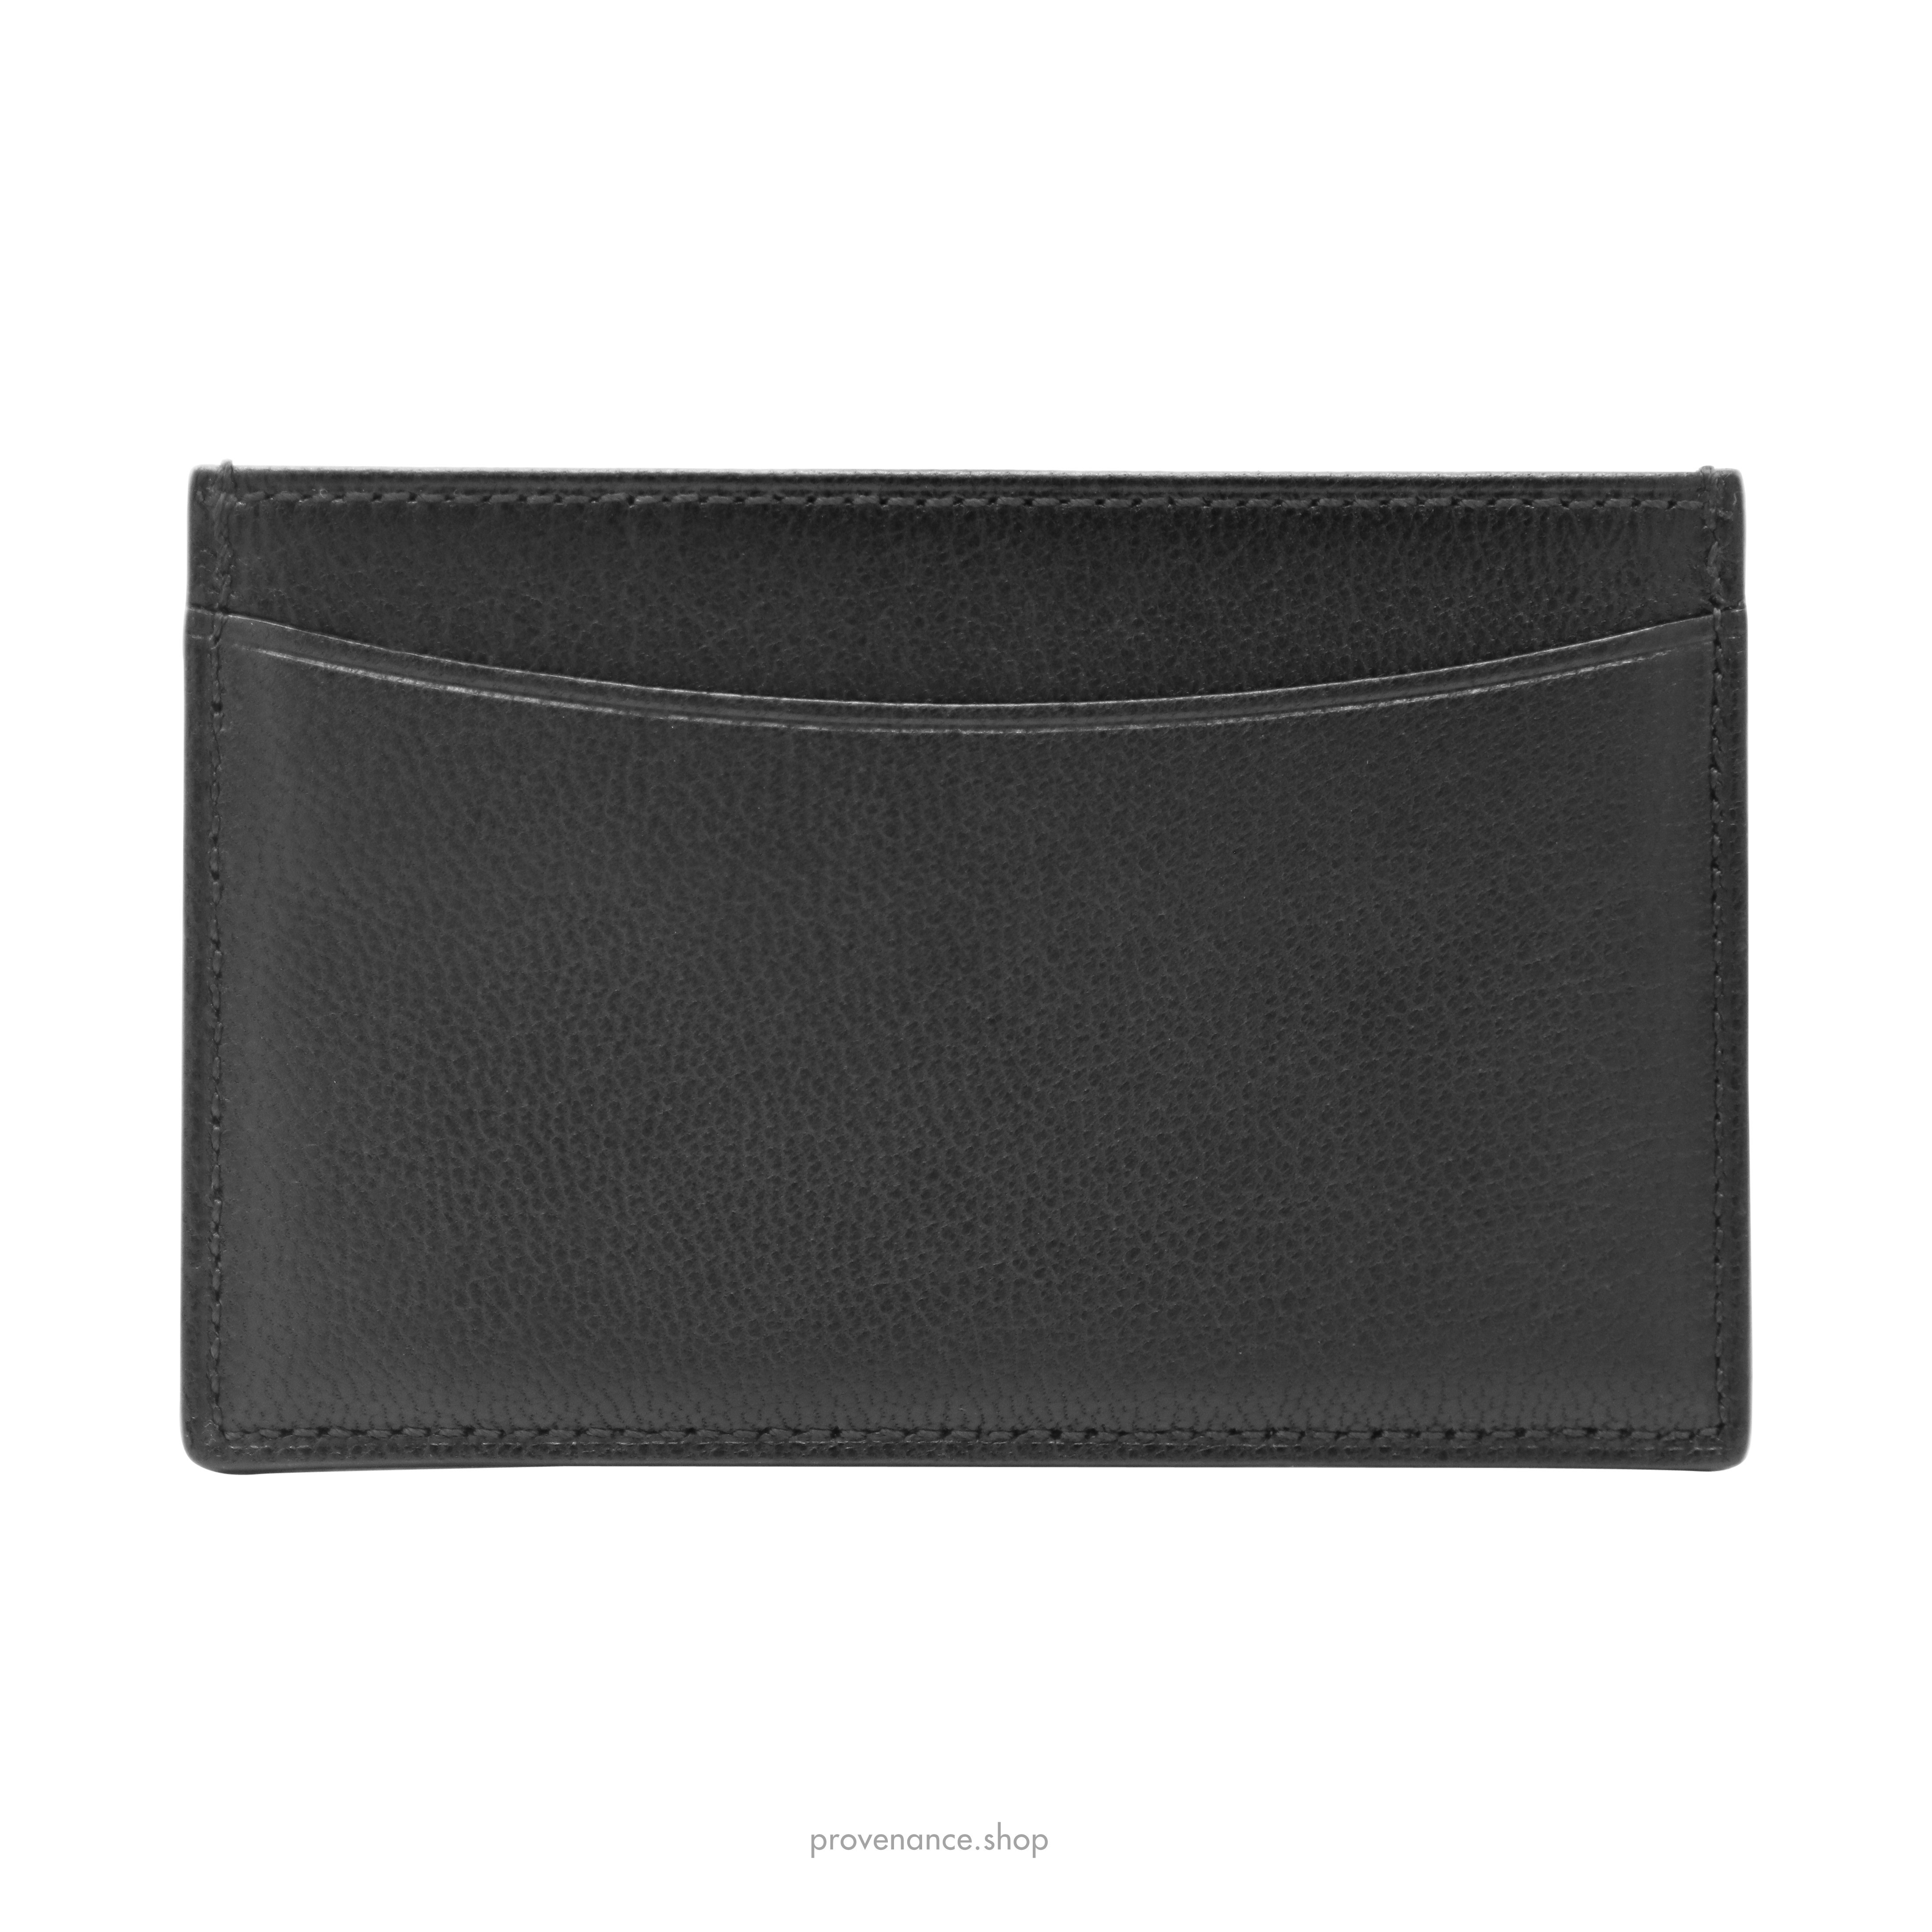 Card Holder Wallet - Black Chevre Leather - 2